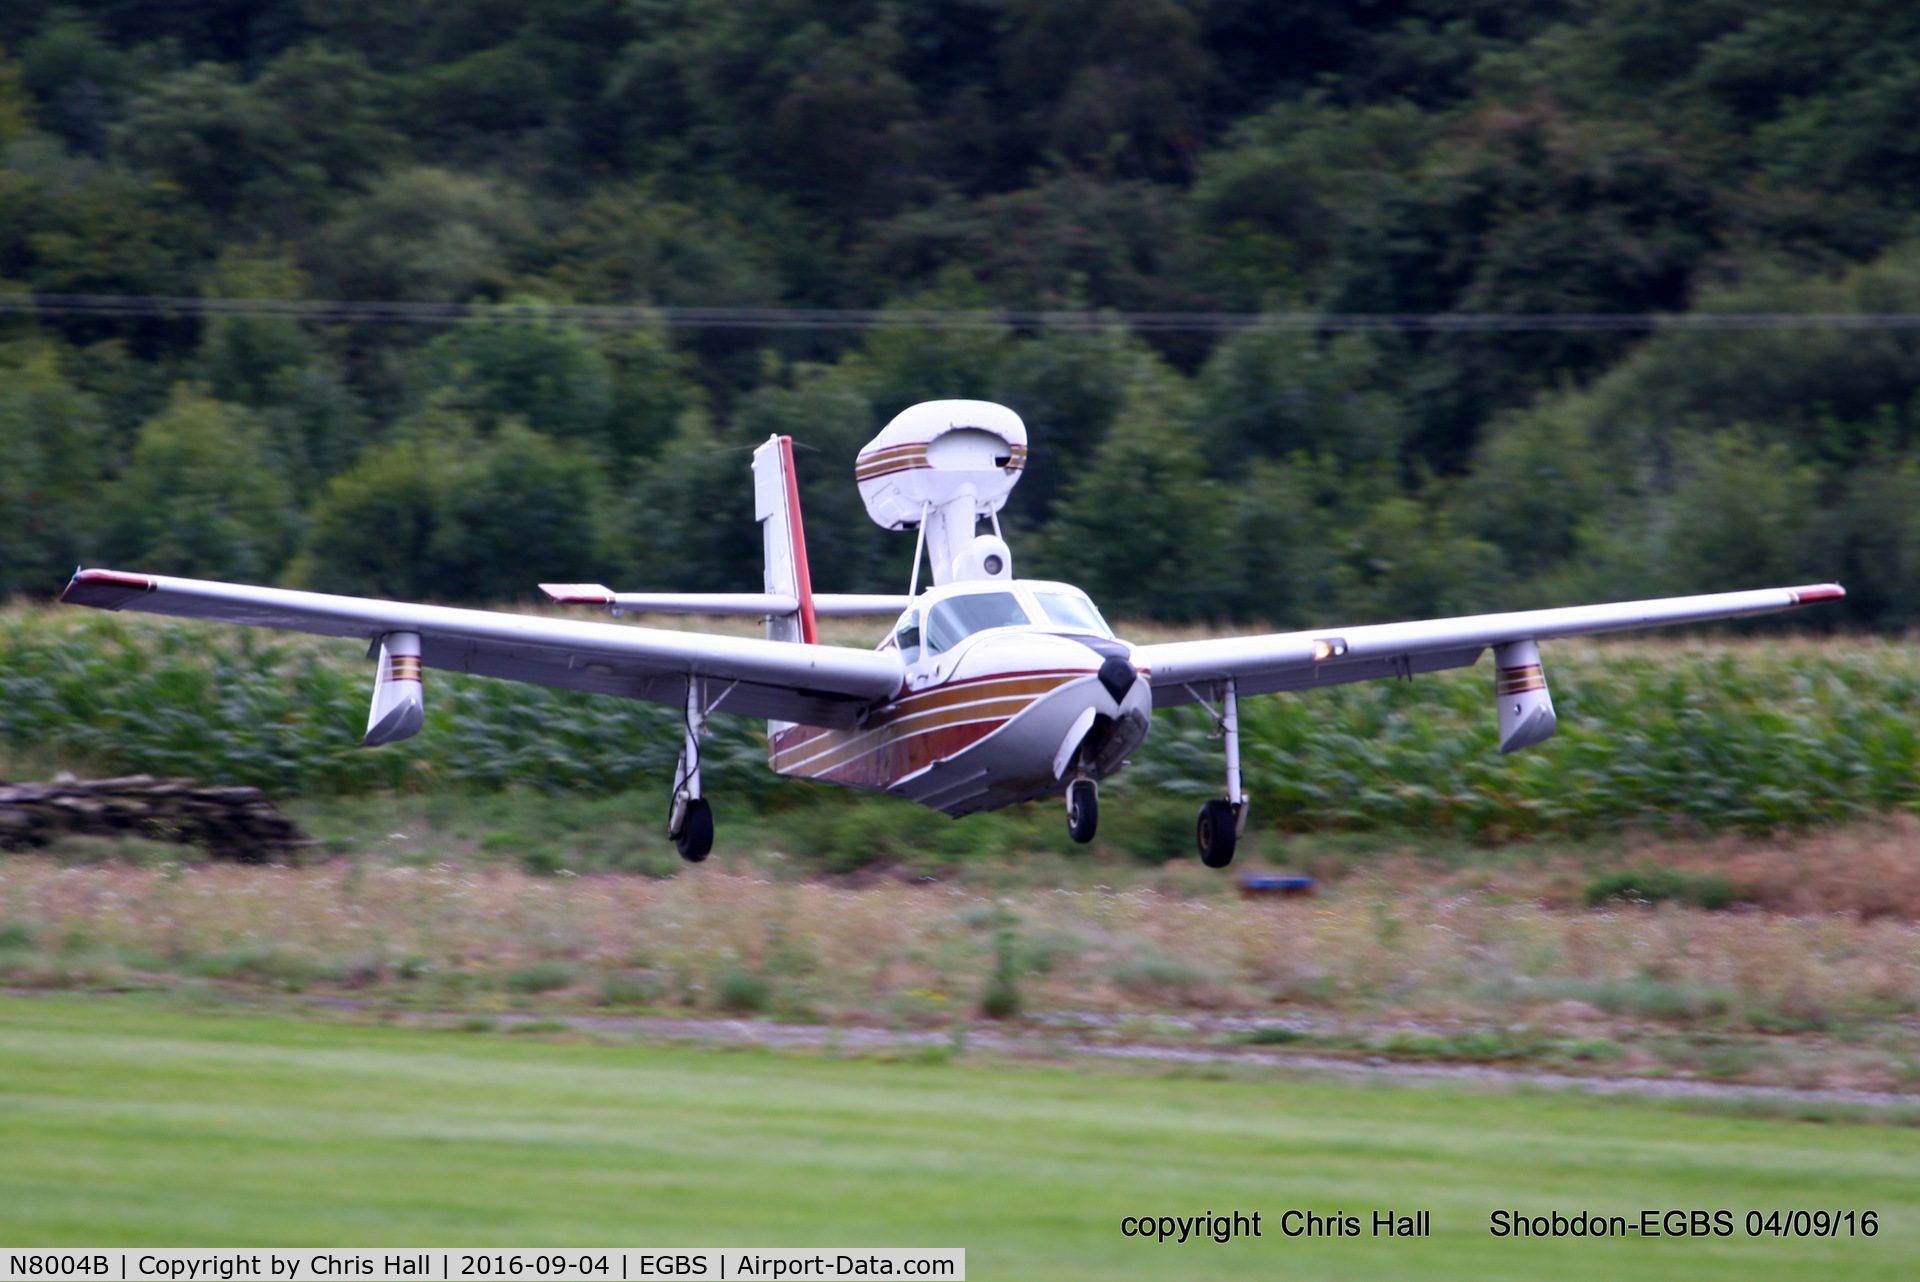 N8004B, 1980 Consolidated Aeronautics Inc. Lake LA-4-200 C/N 1022, Royal Aero Club RRRA air race at Shobdon